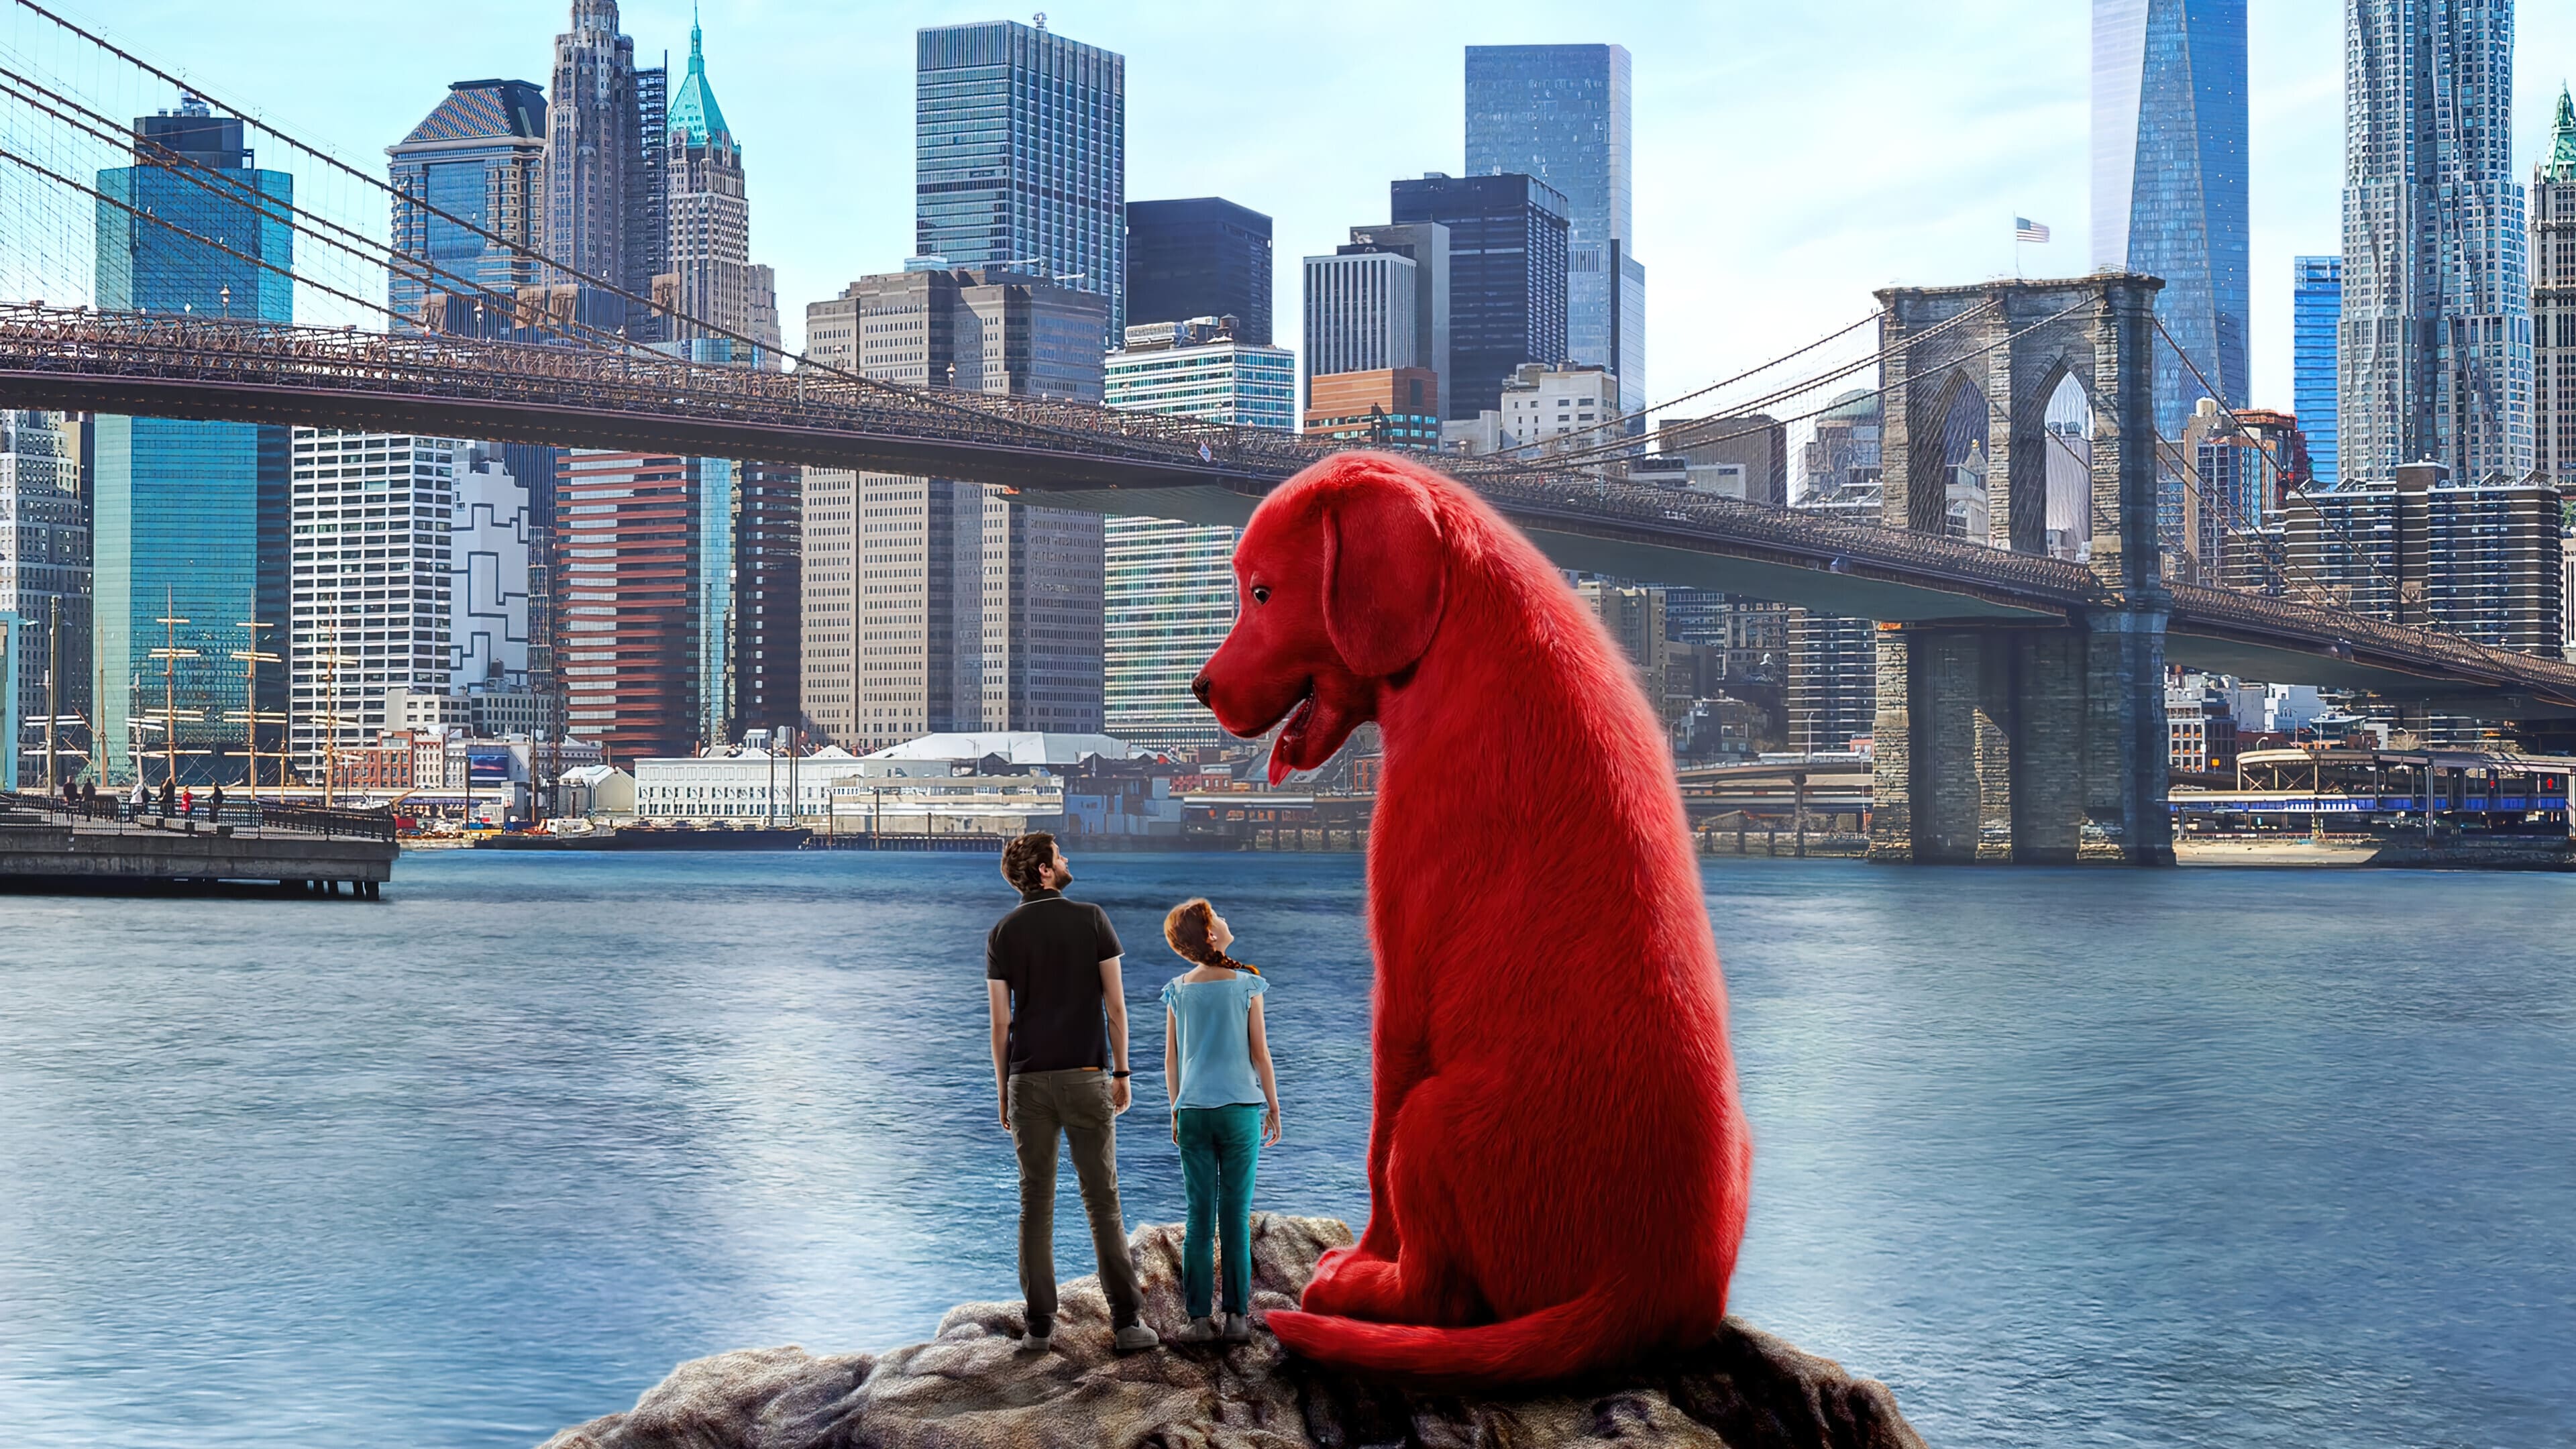 Clifford der große rote Hund
 2021 ganzer film streamcloud
